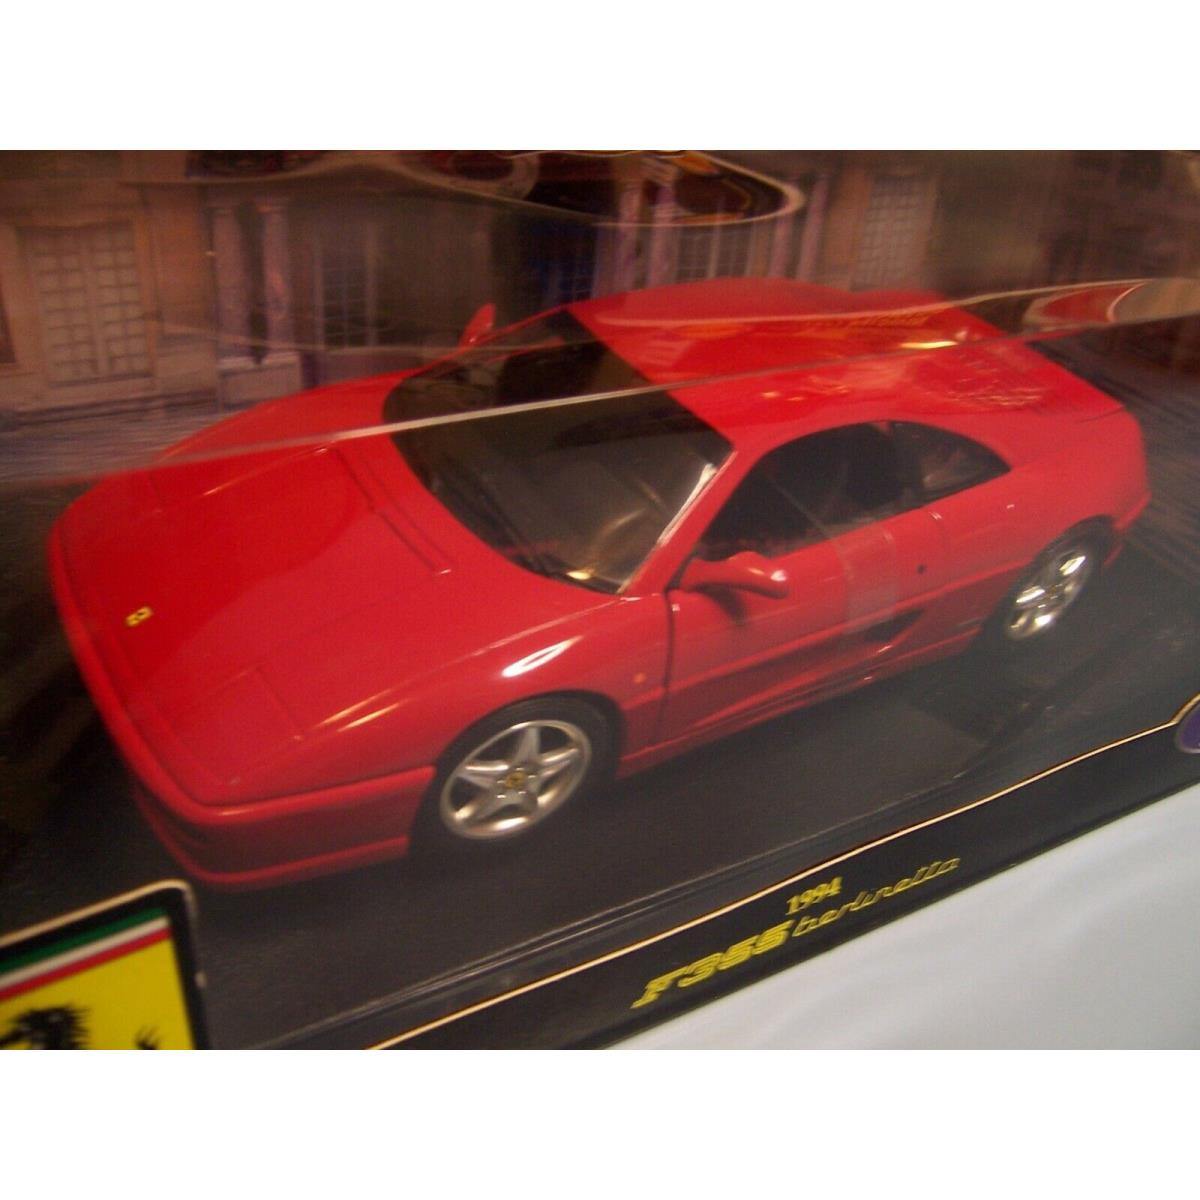 Hot Wheels Ferrari F 355 Berlinetta 1/18